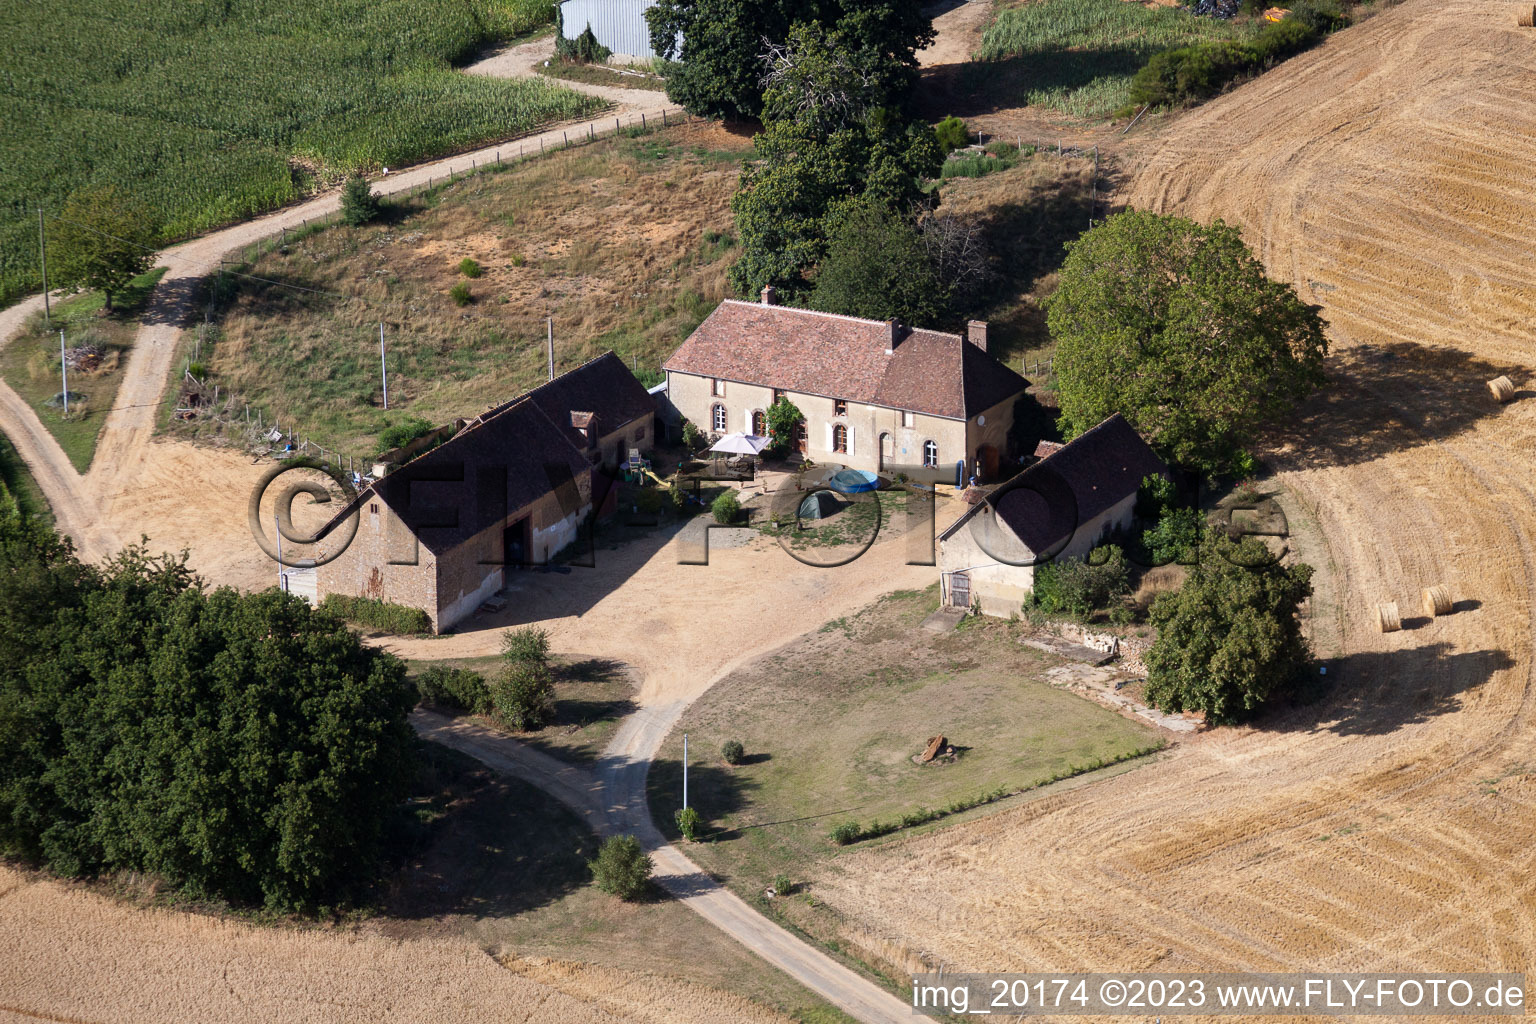 Coudrecieux im Bundesland Sarthe, Frankreich aus der Luft betrachtet